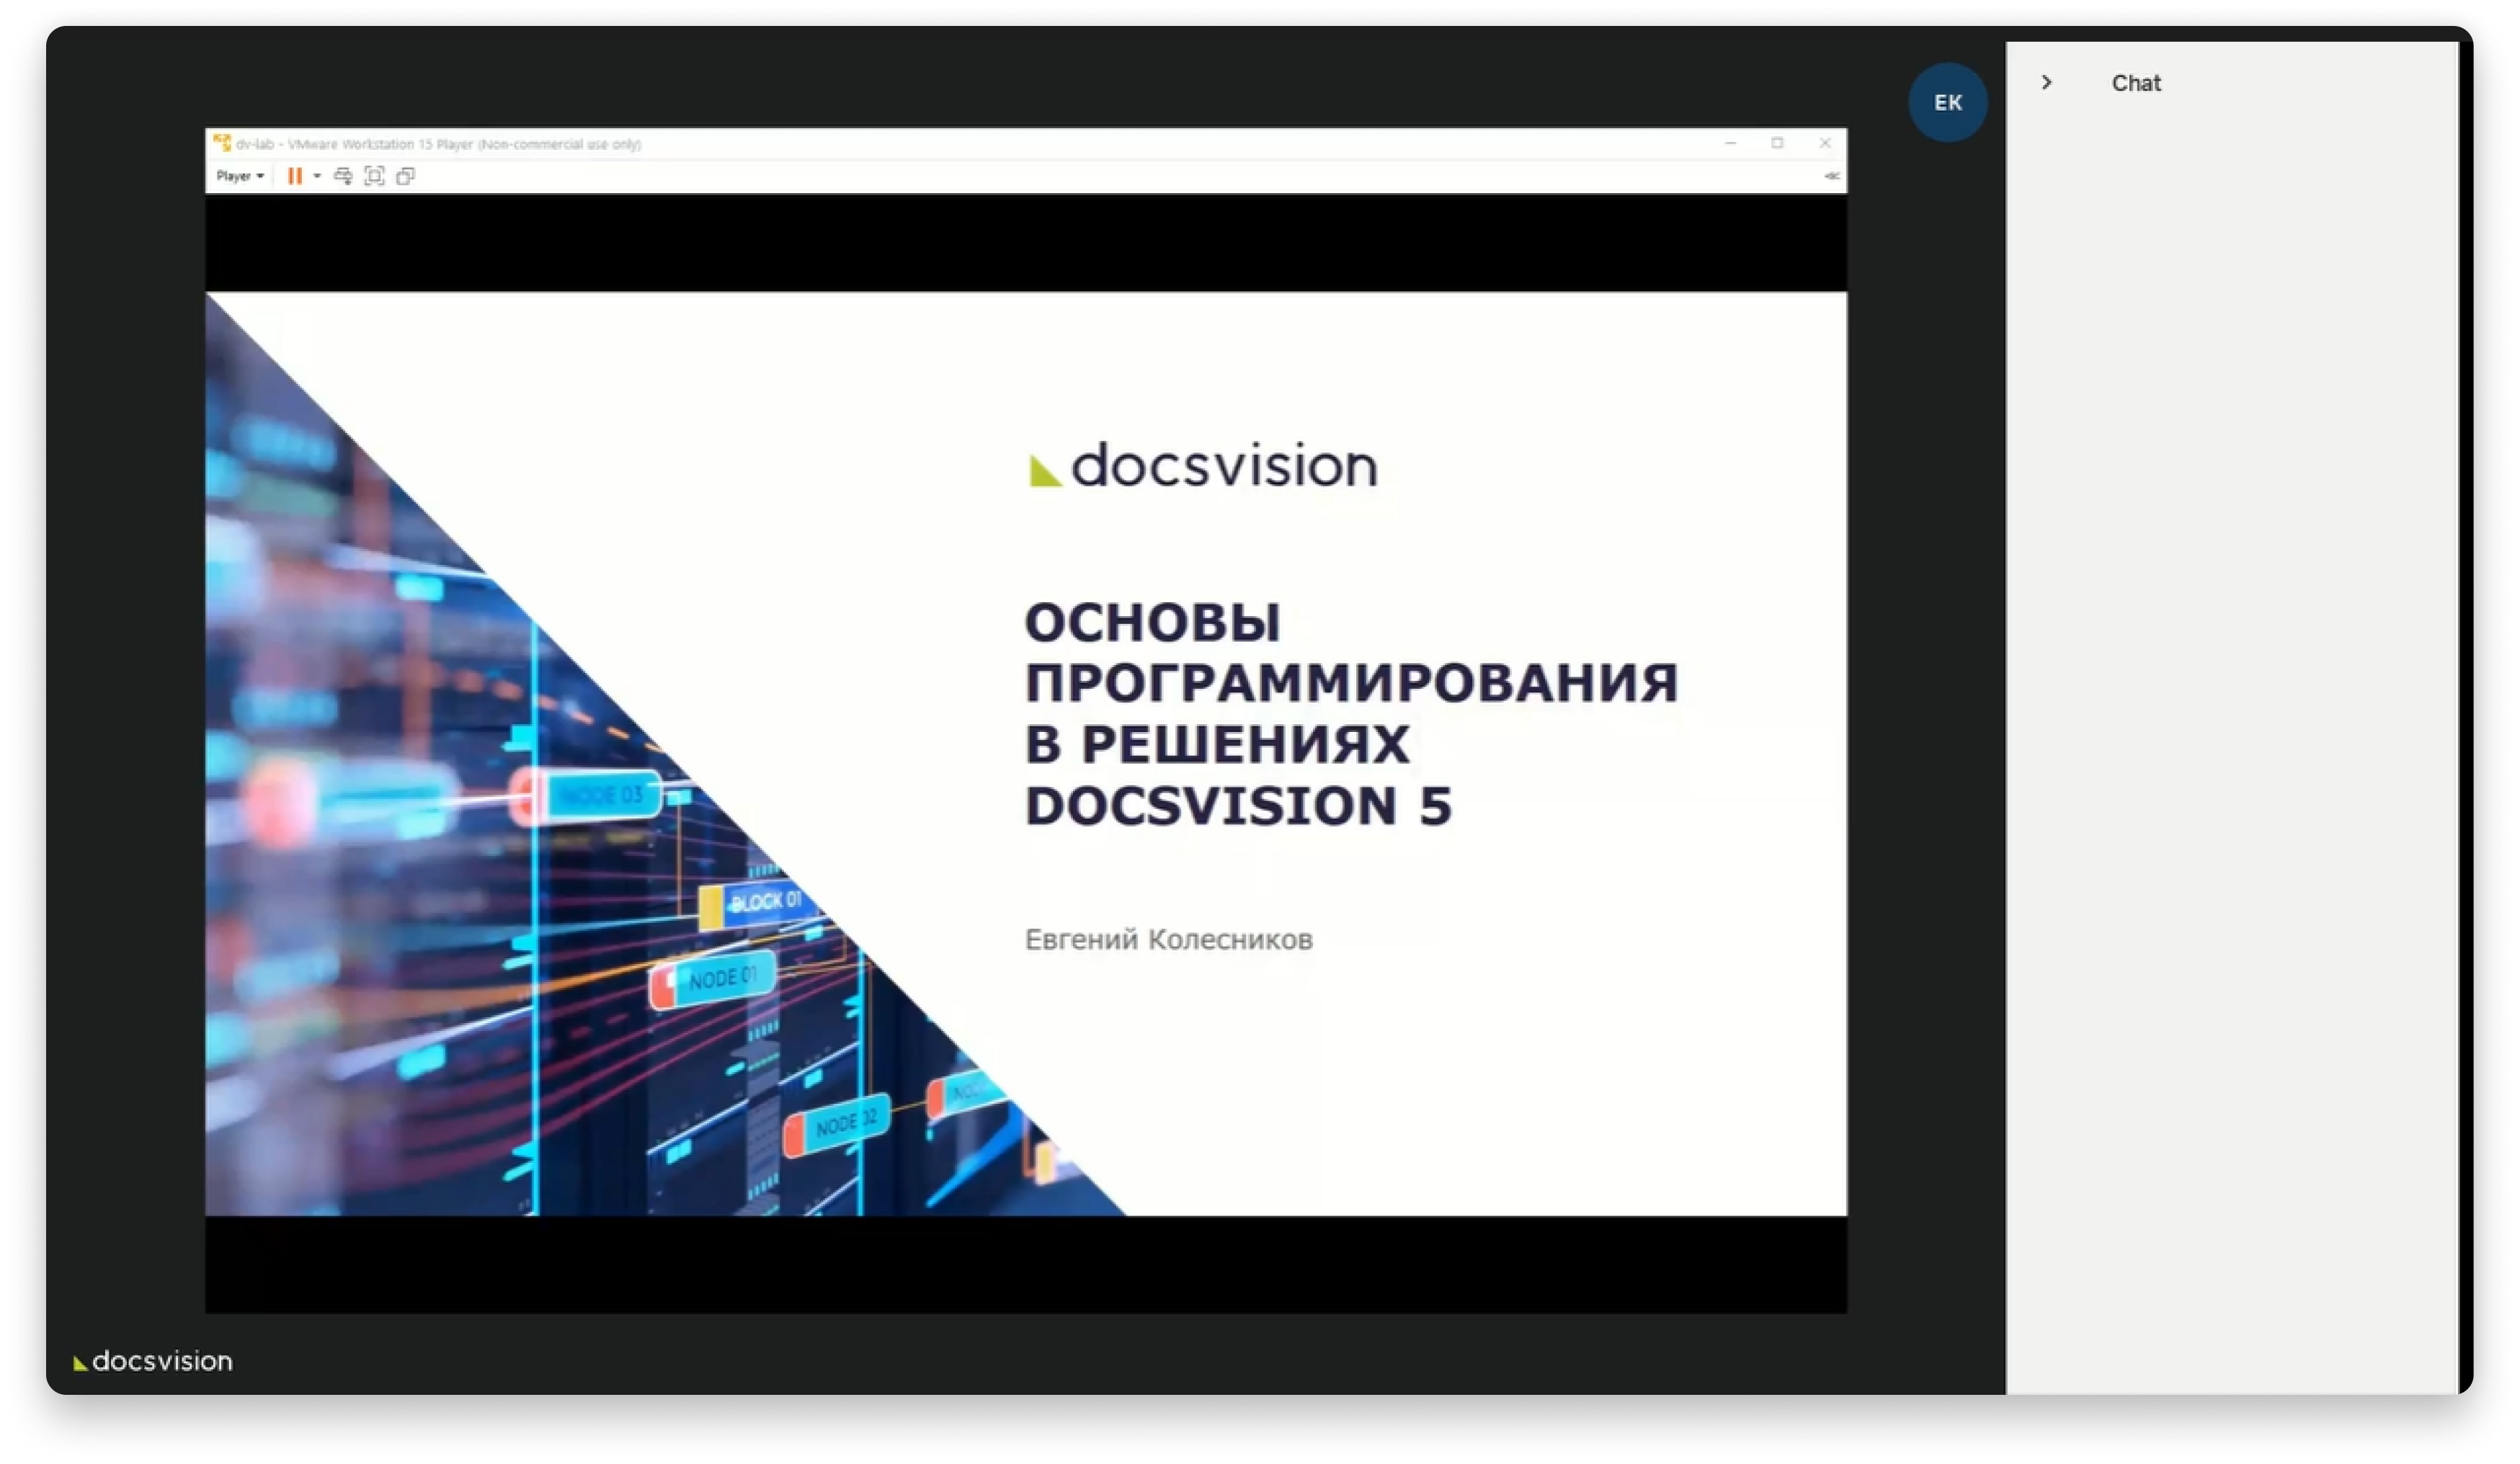 webinar_docsvision_2